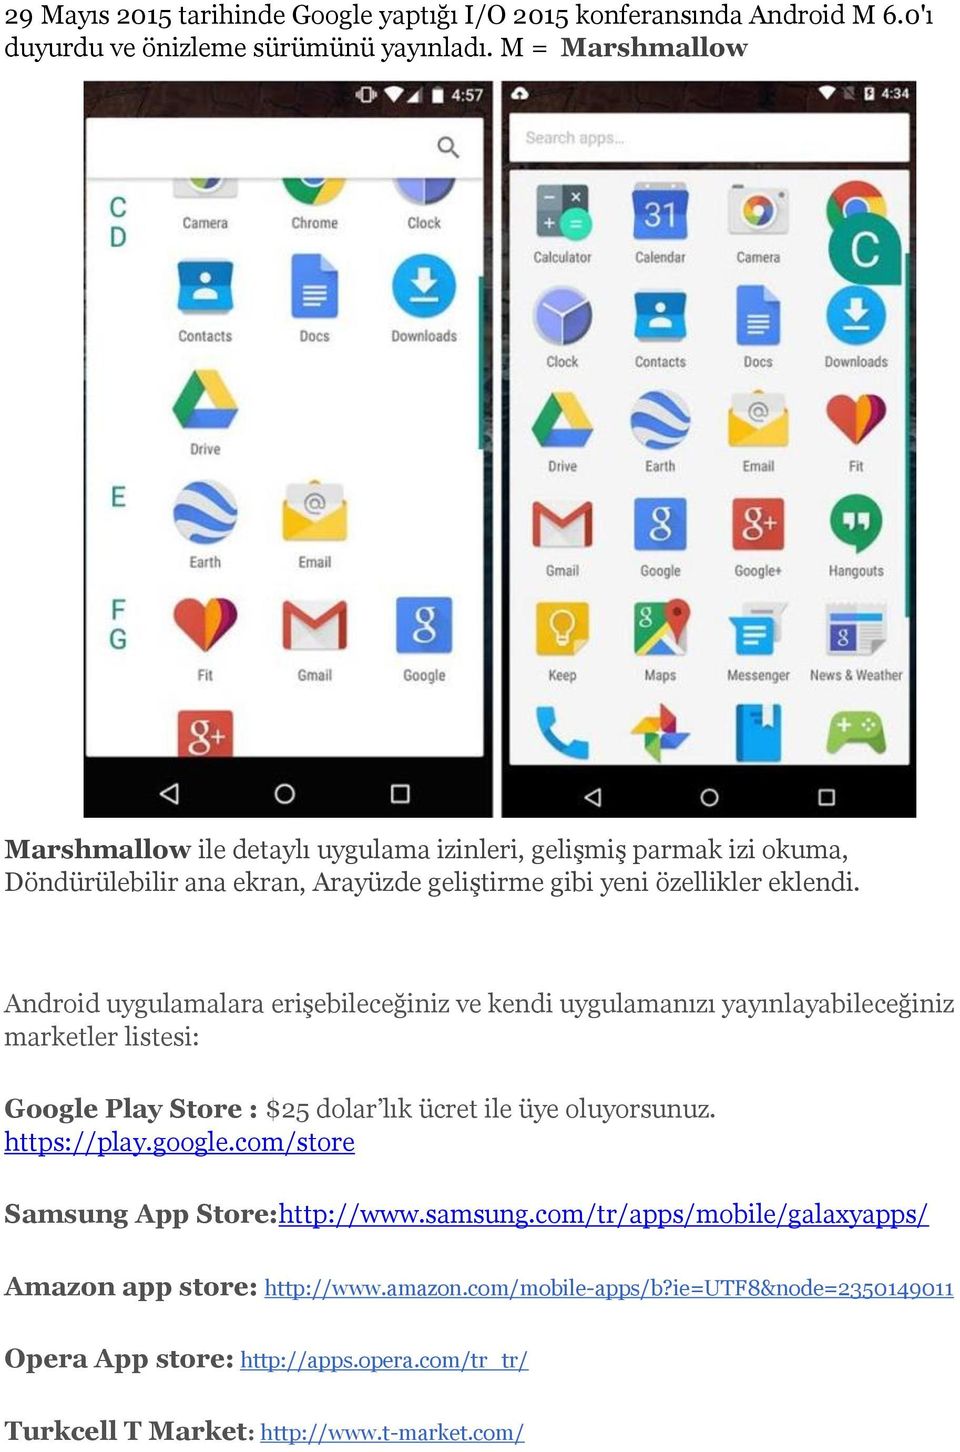 Android uygulamalara erişebileceğiniz ve kendi uygulamanızı yayınlayabileceğiniz marketler listesi: Google Play Store : $25 dolar lık ücret ile üye oluyorsunuz. https://play.